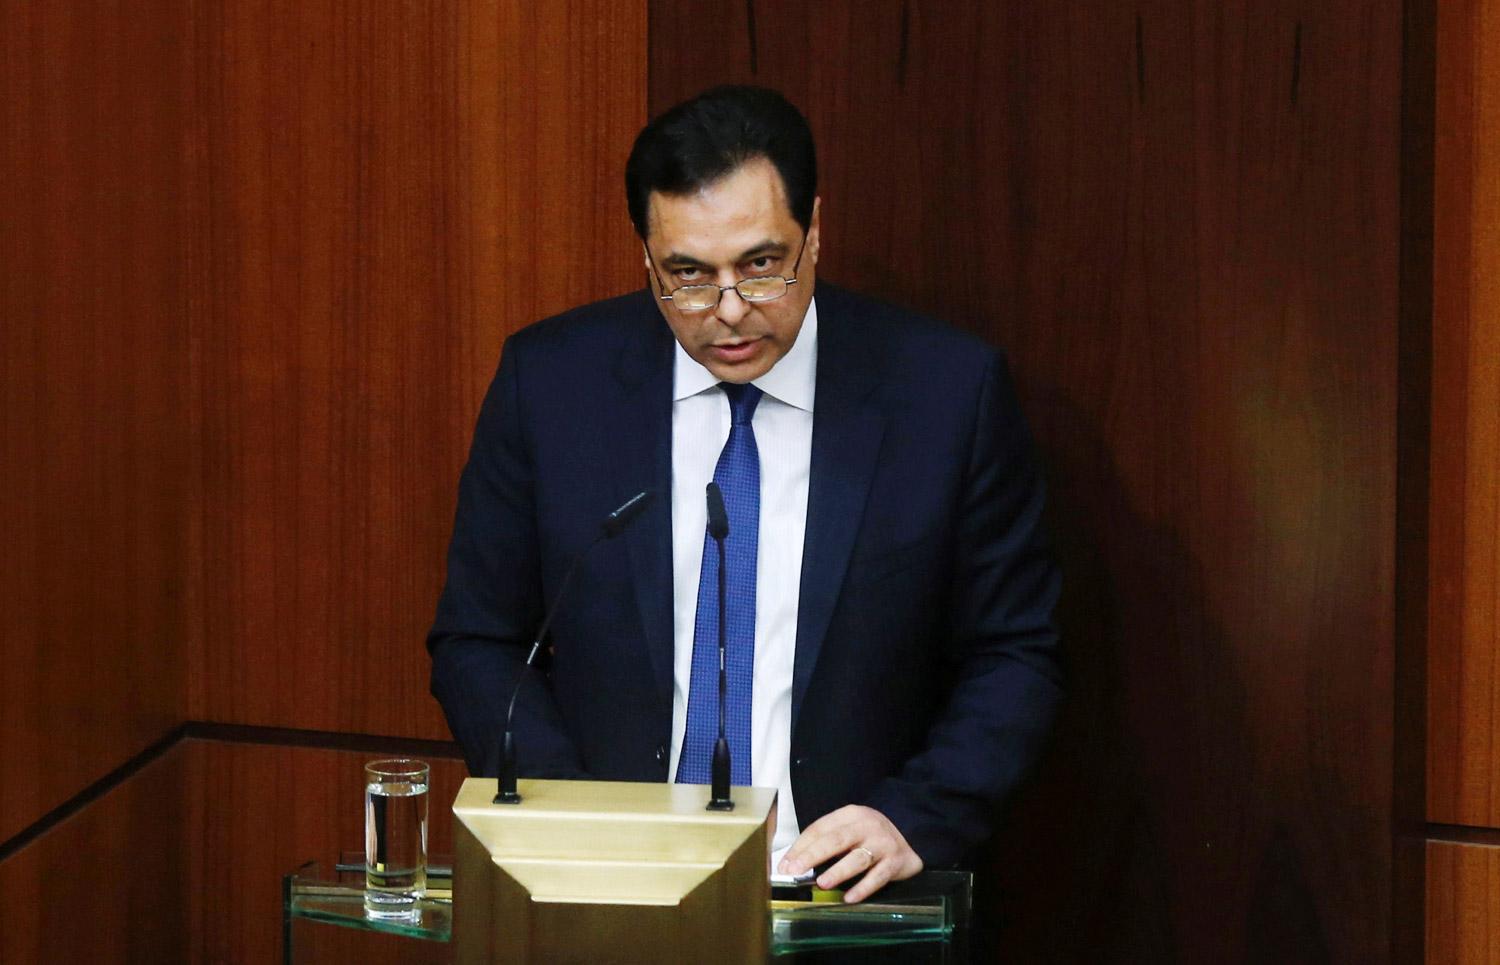 رئيس الحكومة اللبنانية حسان دياب